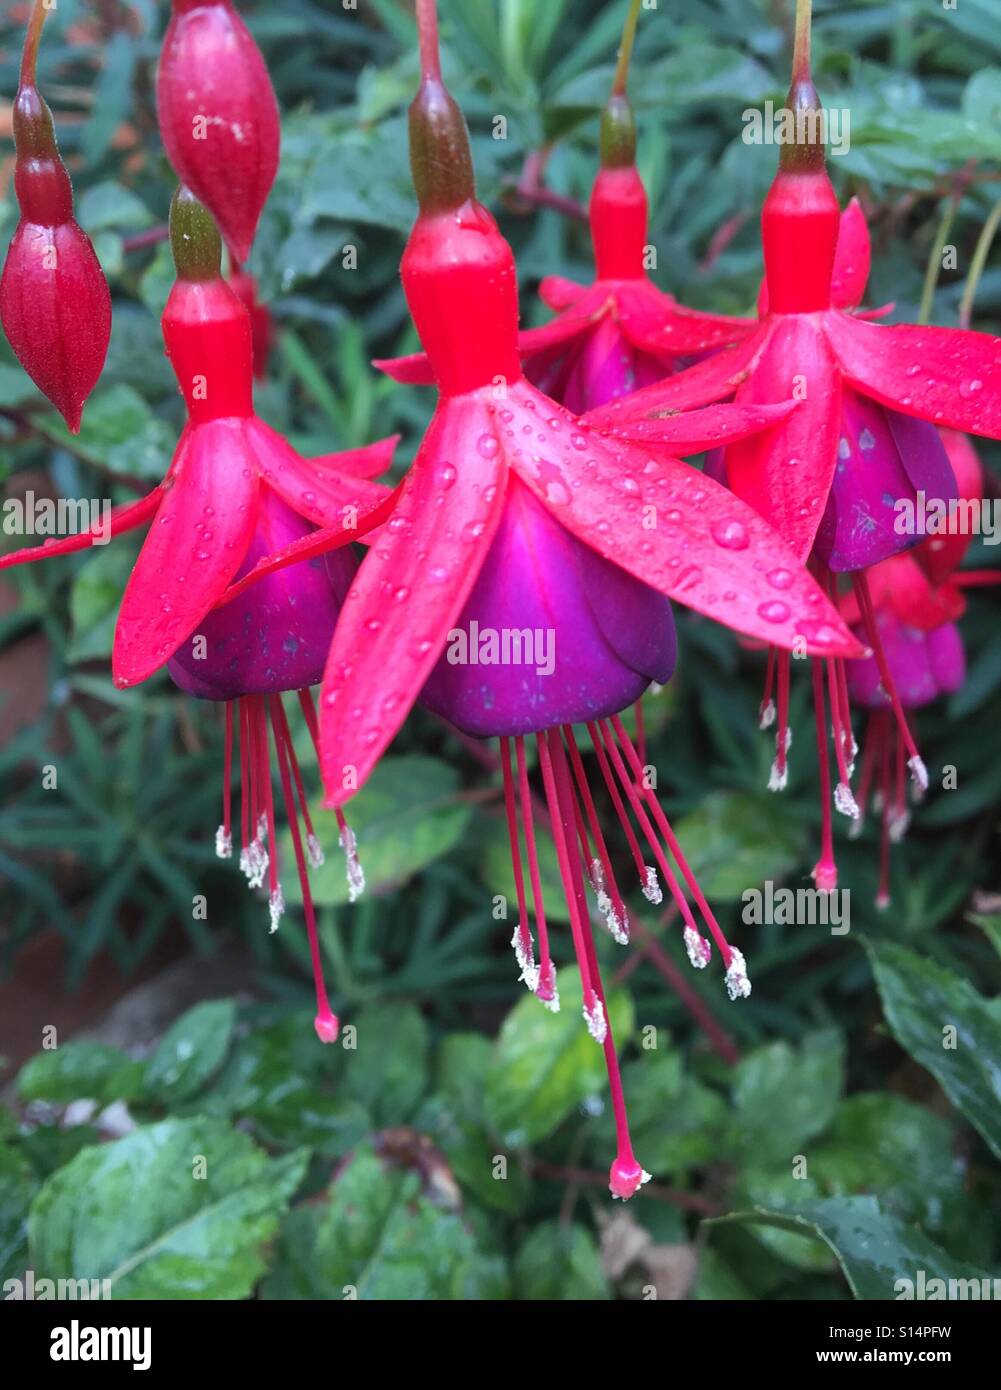 Des modèles dans la nature - Jardin d'ornement fleurs Fuschia, rose et mauve avec de longues étamines. Les gouttelettes d'eau après une douche de pluie Banque D'Images